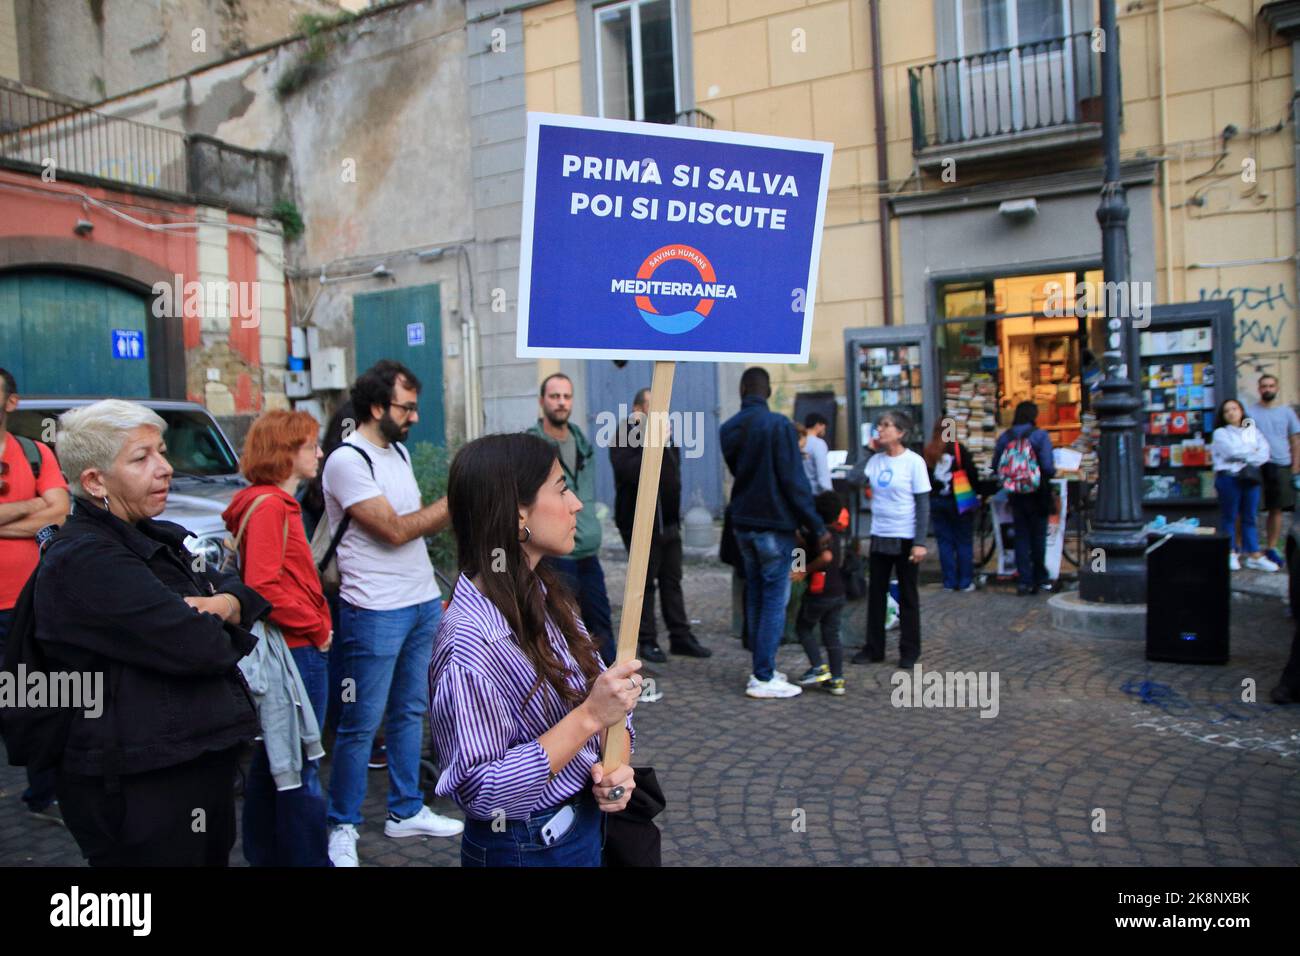 Les peuples protestent contre le renouvellement du Mémorandum, un accord entre l'Italie et la Libye sur la gestion des migrants. Personnes avec des signes. Banque D'Images